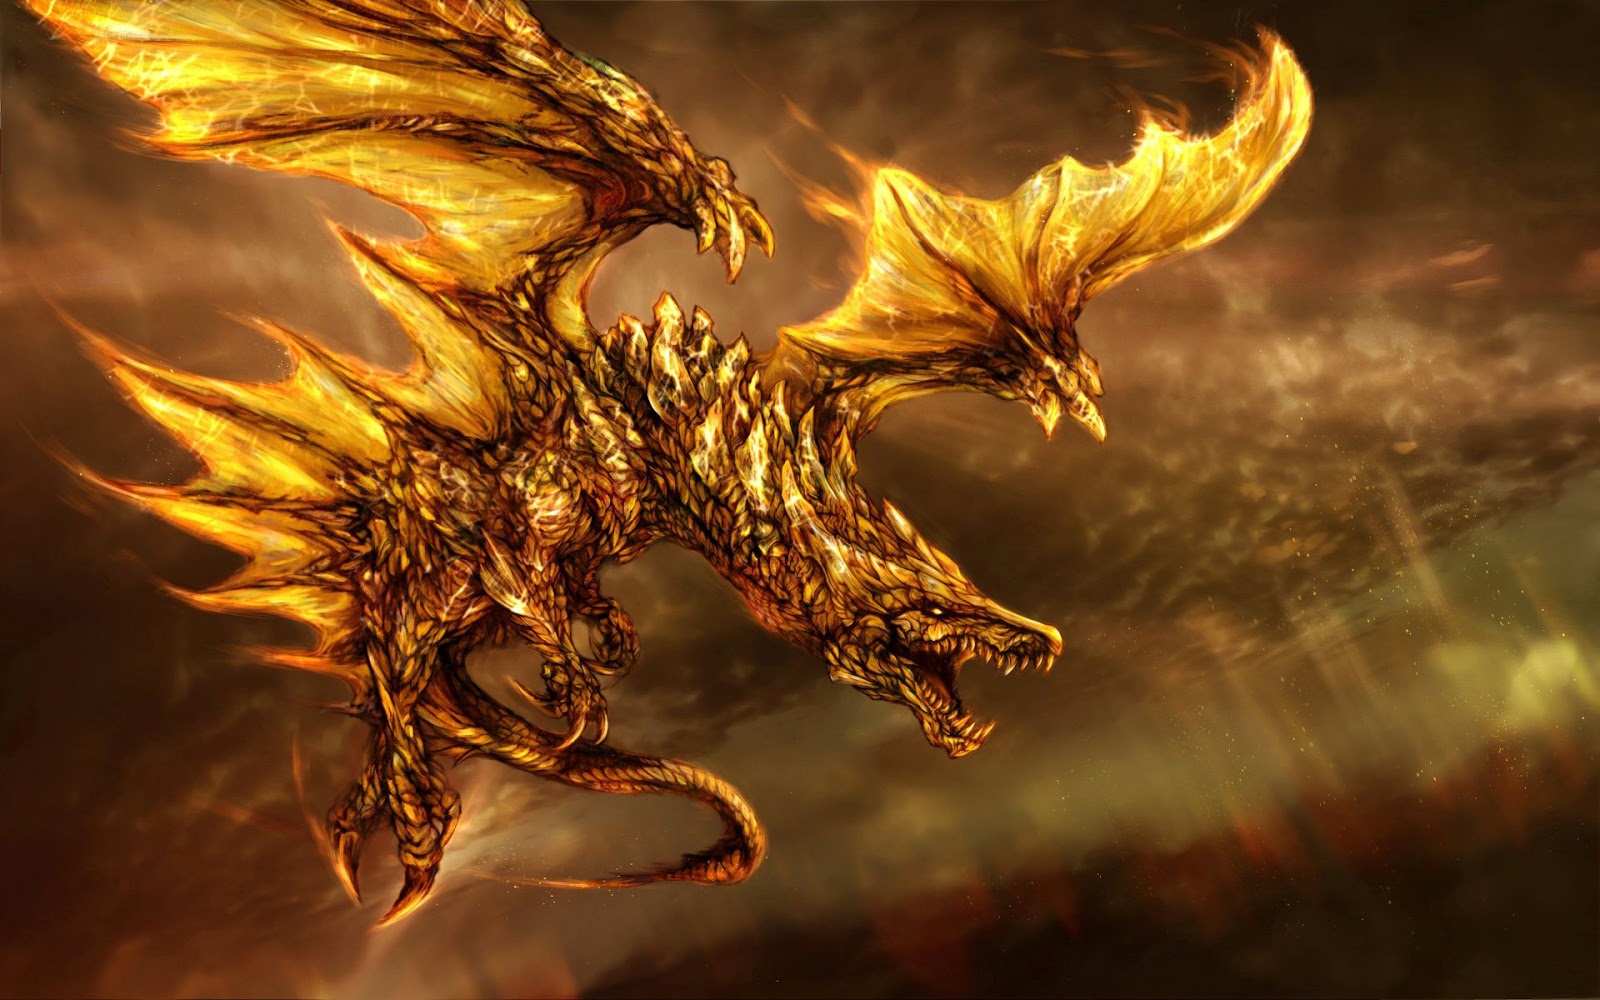 fond d'écran dragon hd,dragon,oeuvre de cg,mythologie,personnage fictif,créature mythique